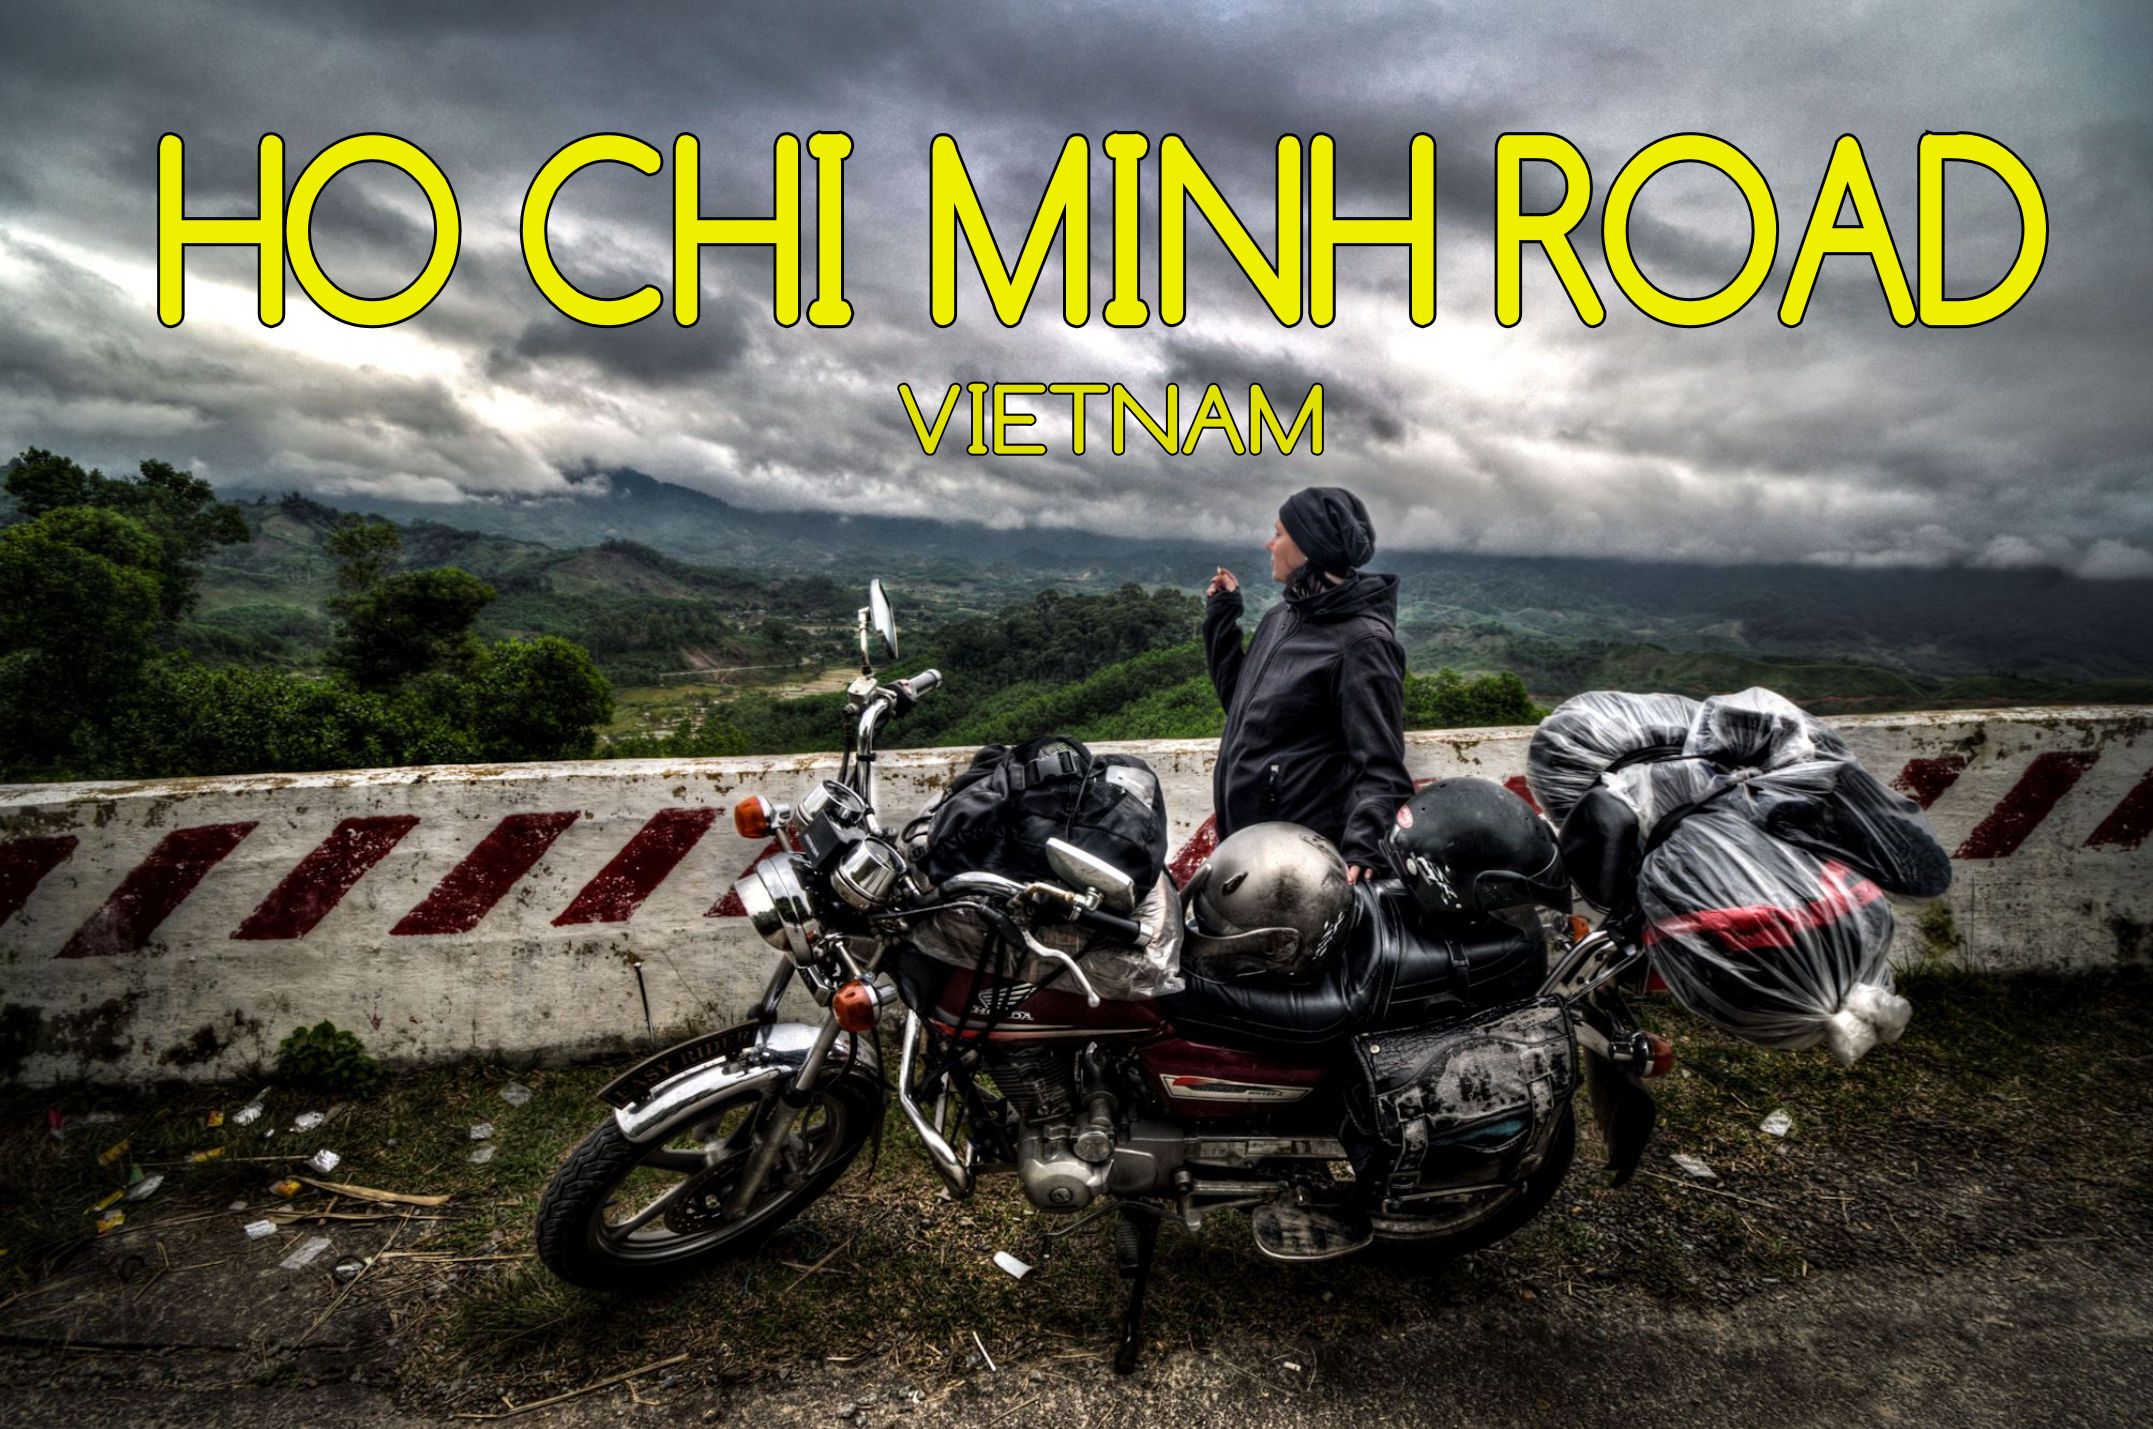 Bilder von der Ho Chi Minh Road in Vietnam - Mogroach